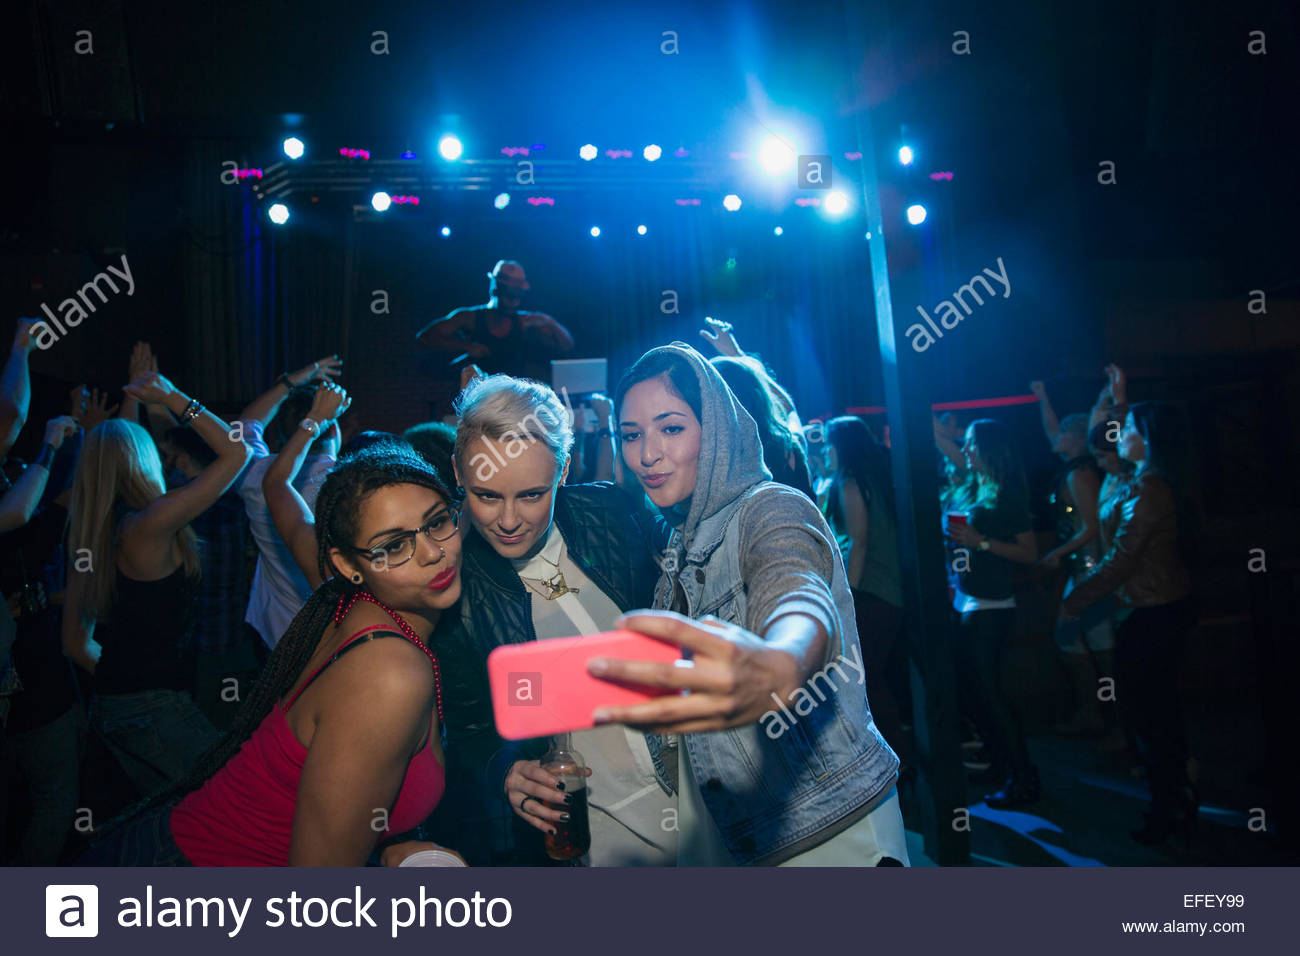 Women taking selfie in nightclub Stock Photo